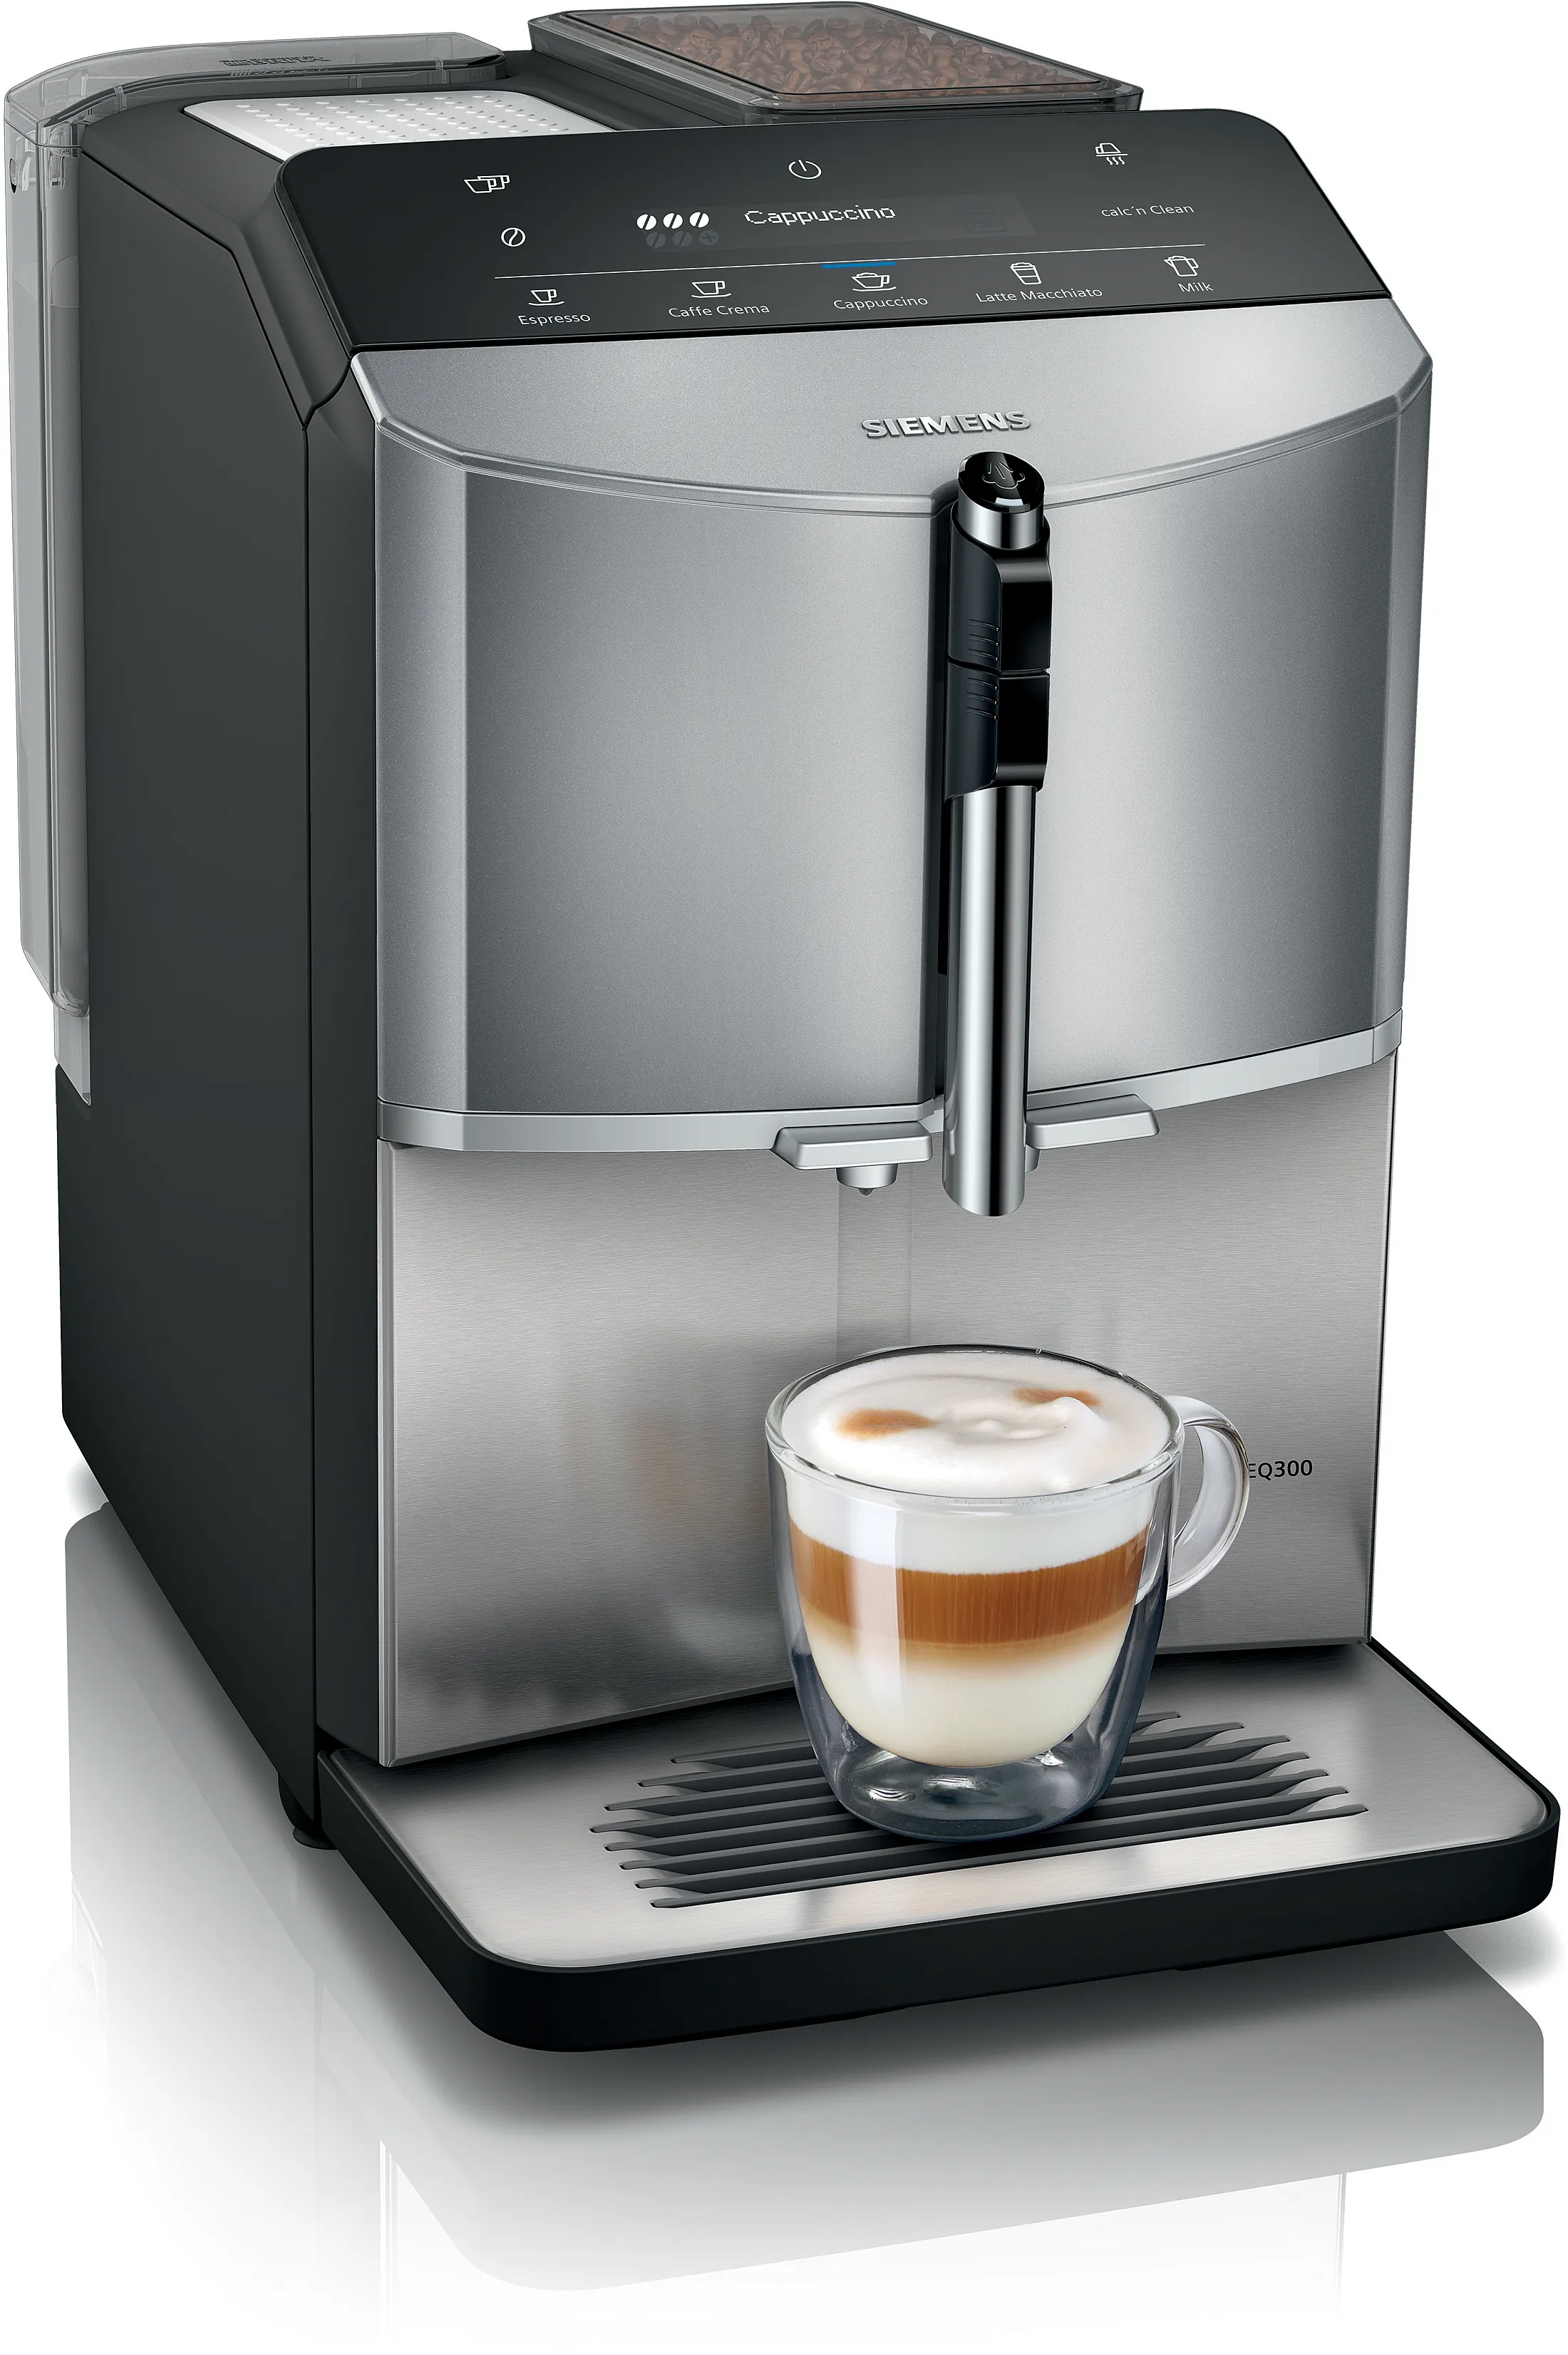 Inbouw espresso volautomaat EQ300 Diamant titanium metallic, Edelstaal 